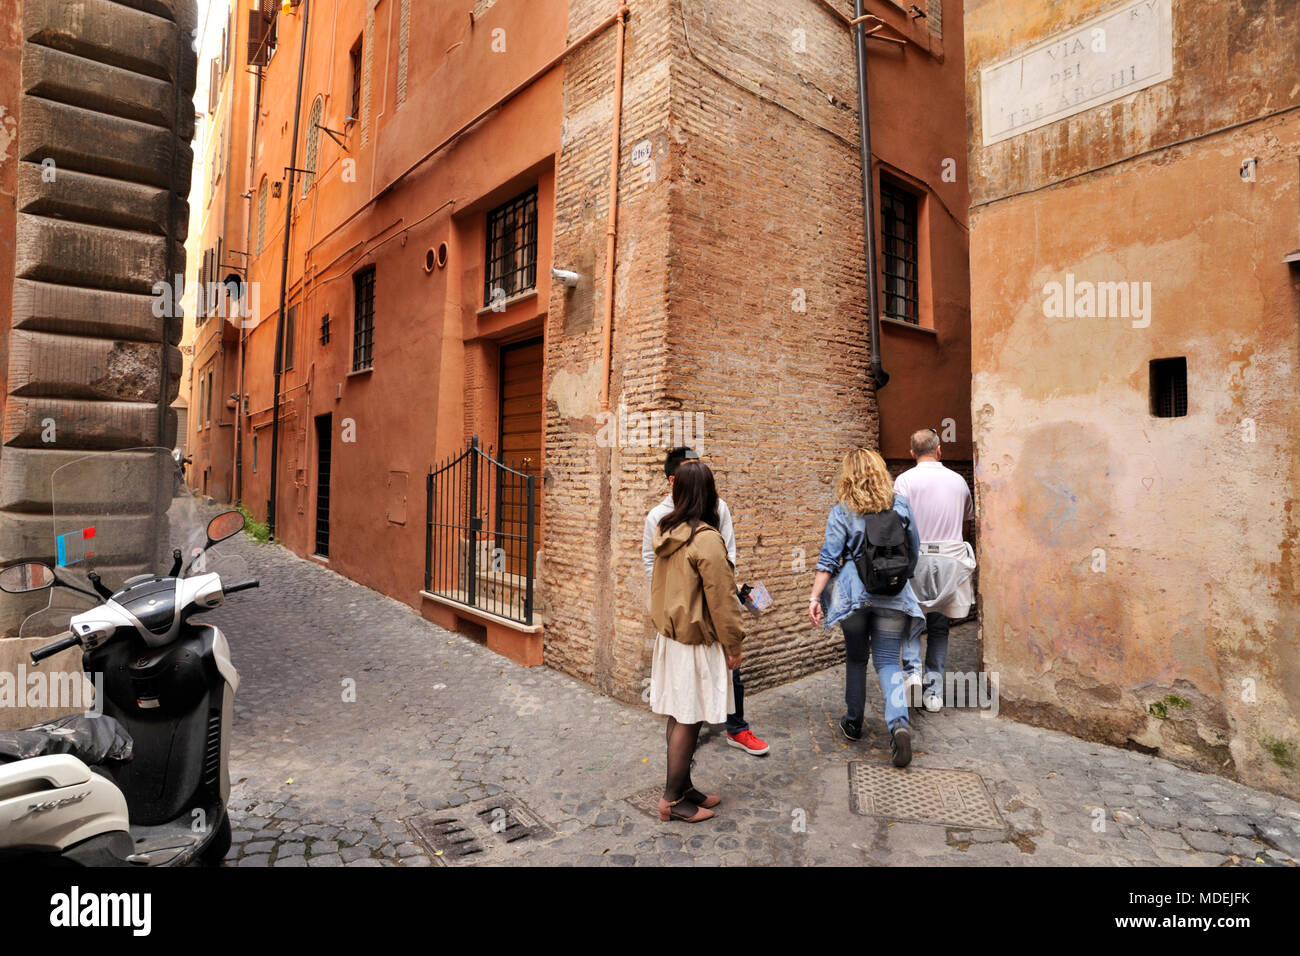 Italy, Rome, Via dei Tre Archi and Vicolo di San Trifone, side street near Via dei Coronari, the narrowest lane in Rome Stock Photo